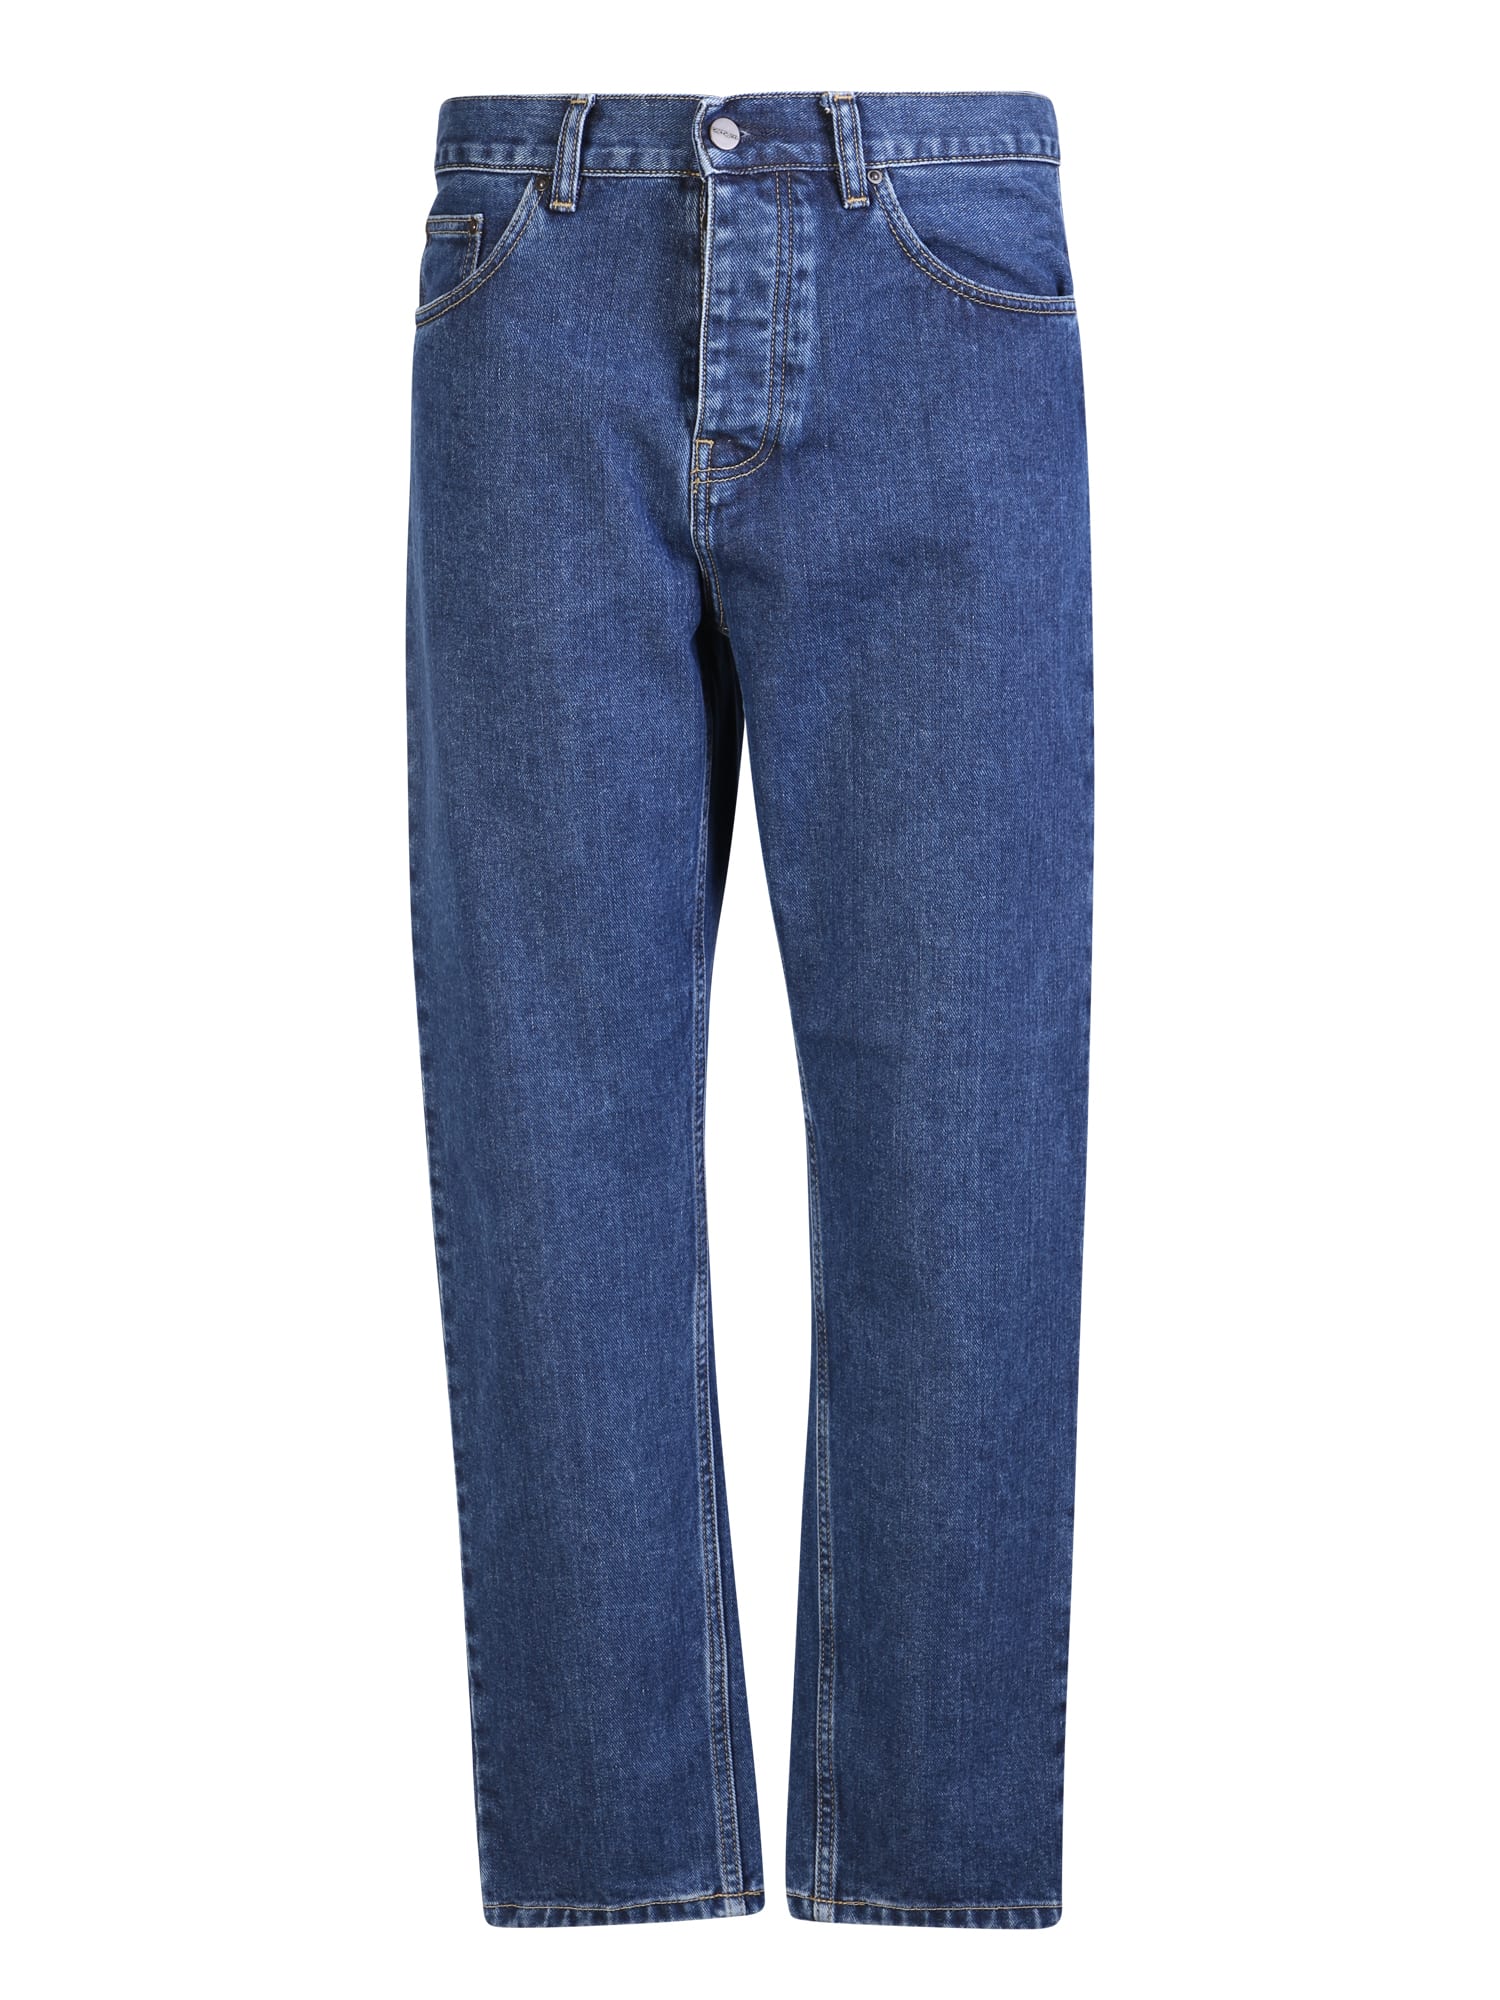 Shop Carhartt Newel Jeans Blue